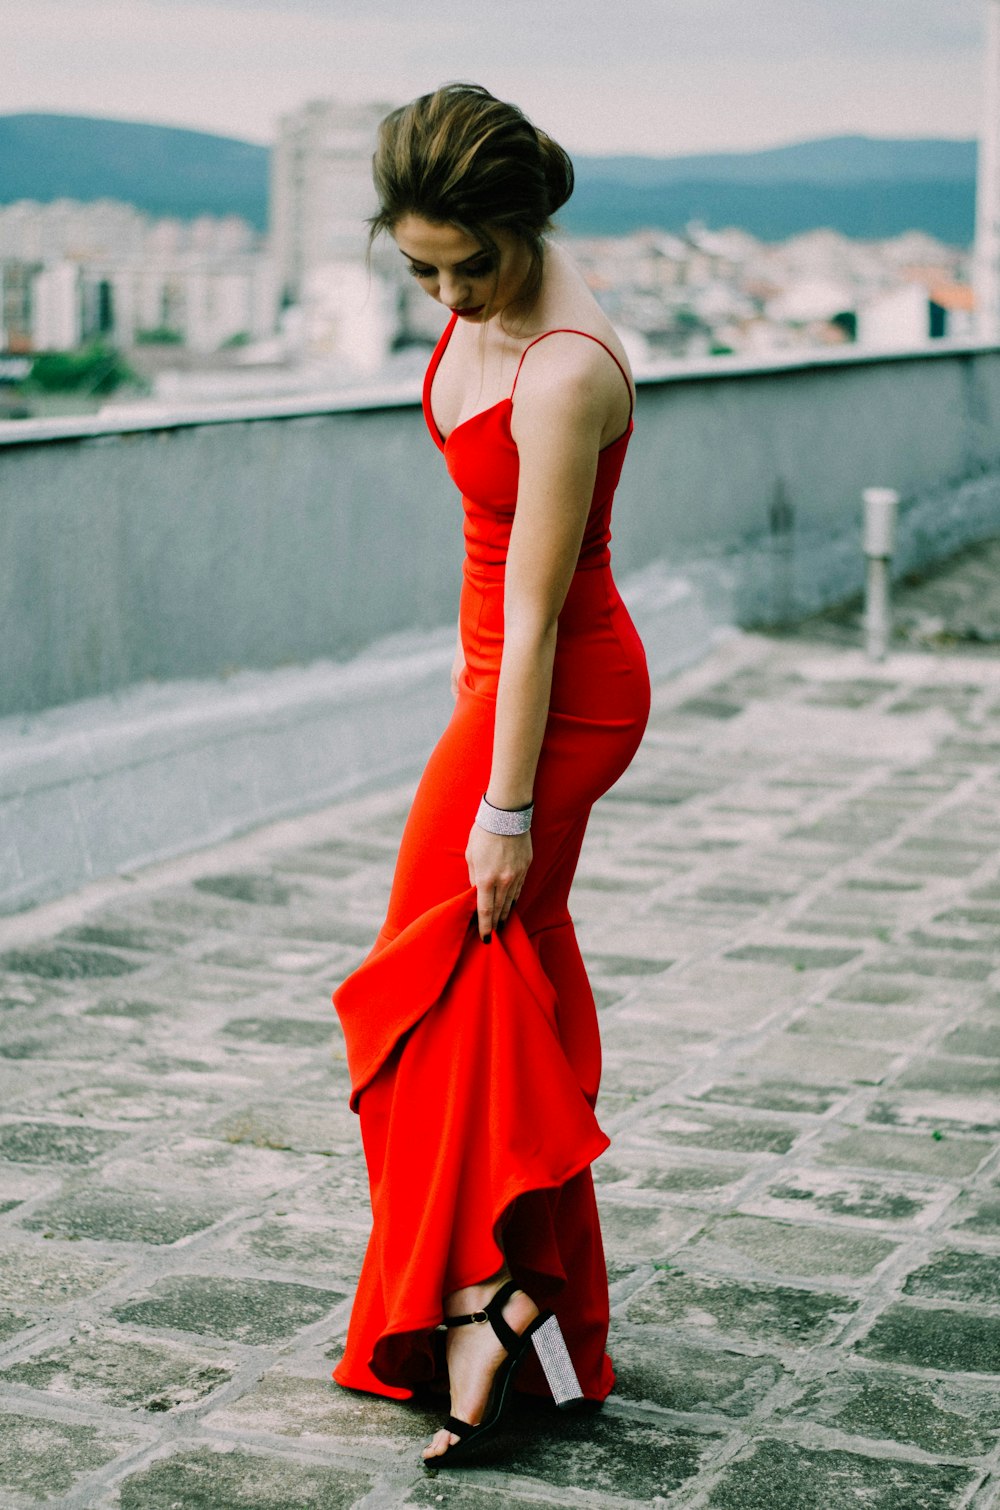 빨간 스파게티 스트랩 드레스를 입고 있는 여자